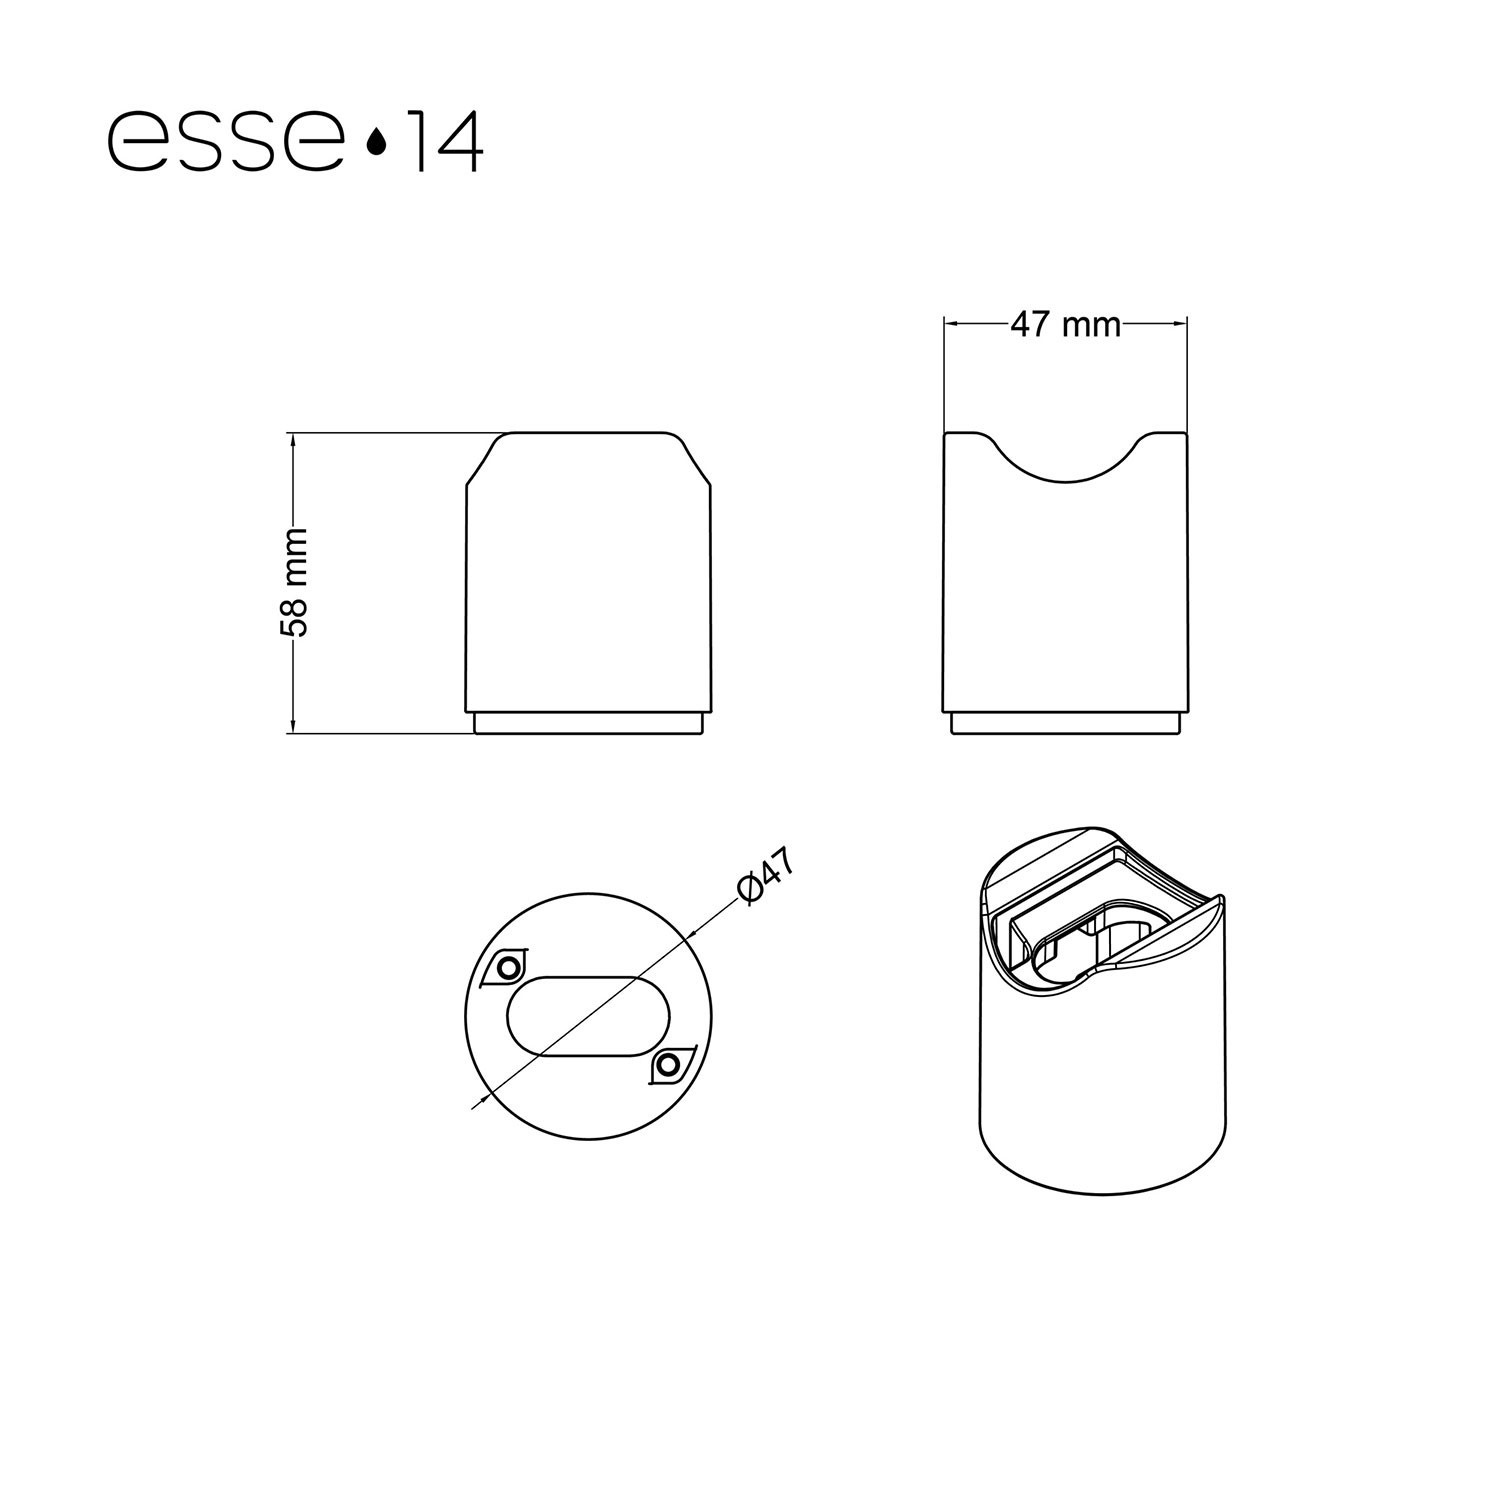 Lampenfassung esse14 für Wand- oder Decke, mit S14d Anschluss - Waterproof IP44